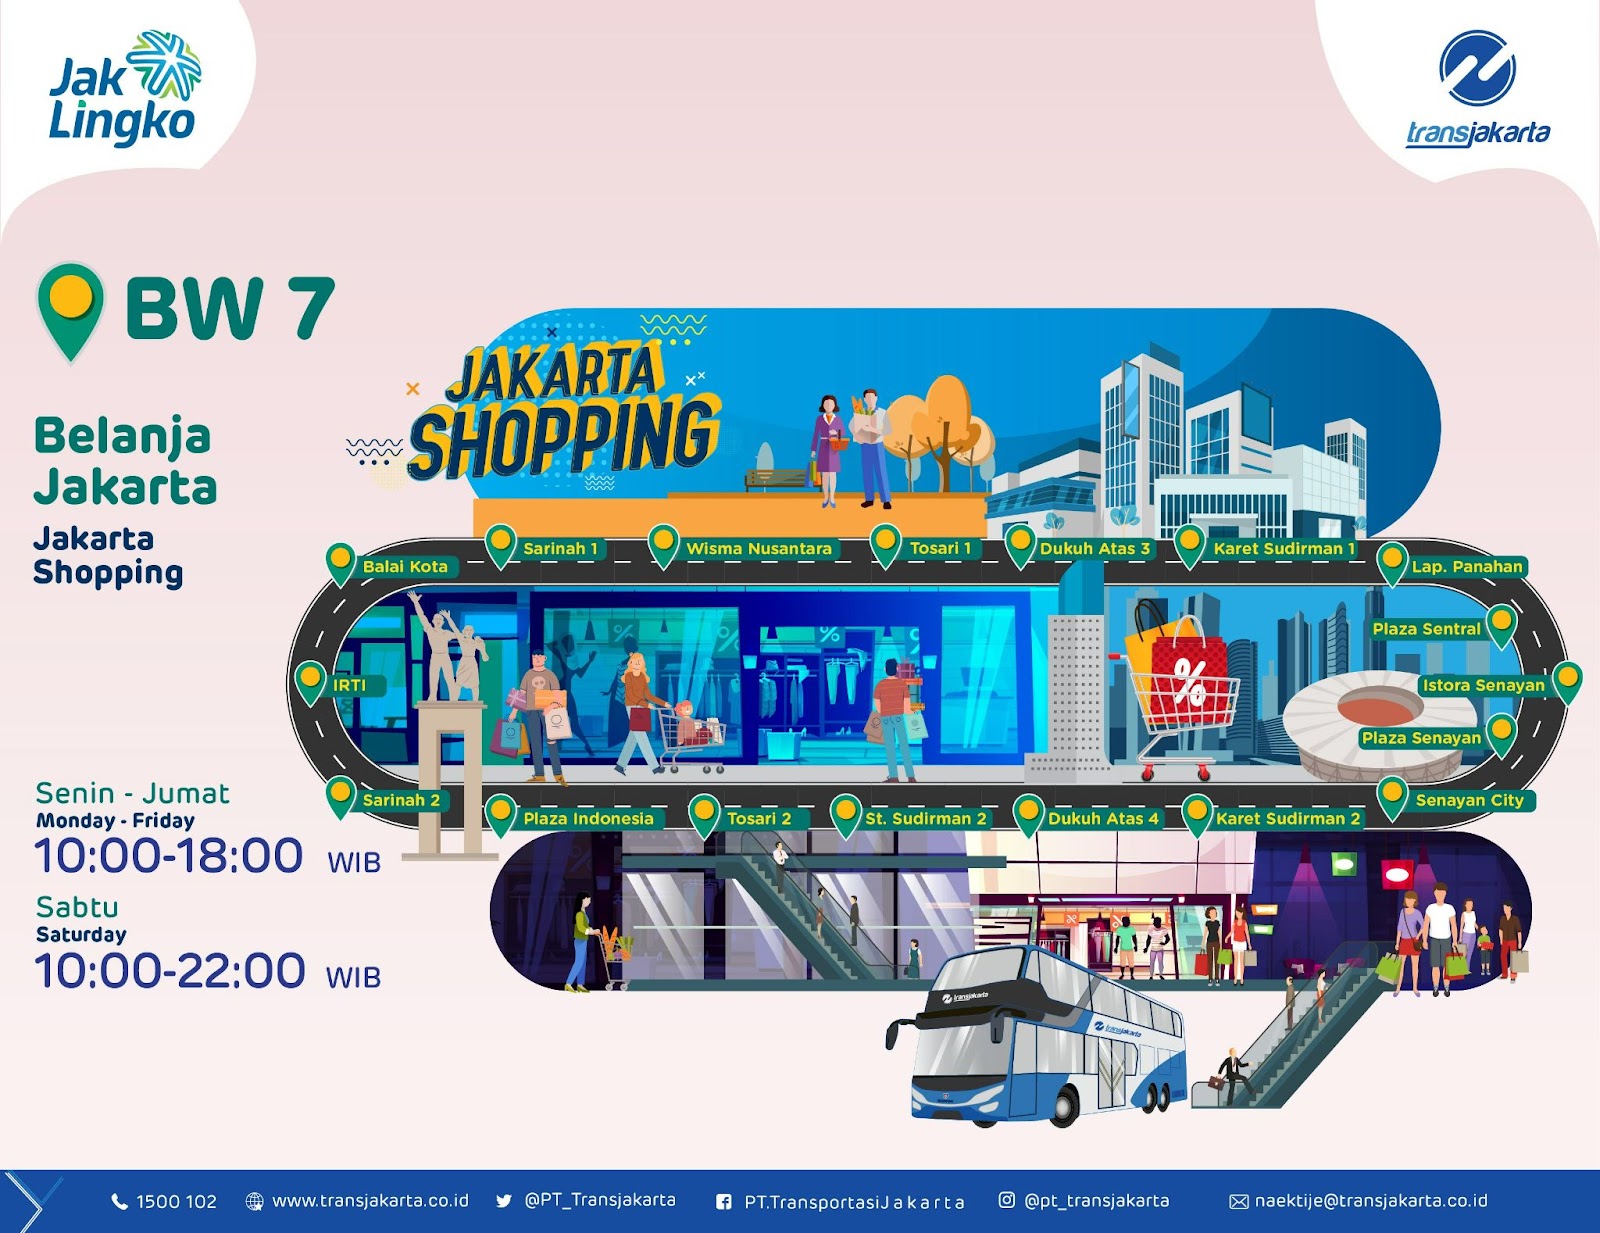 BW7: Belanja Jakarta (Jakarta Shopping) route map. Source:&nbsp;transjakarta.co.id